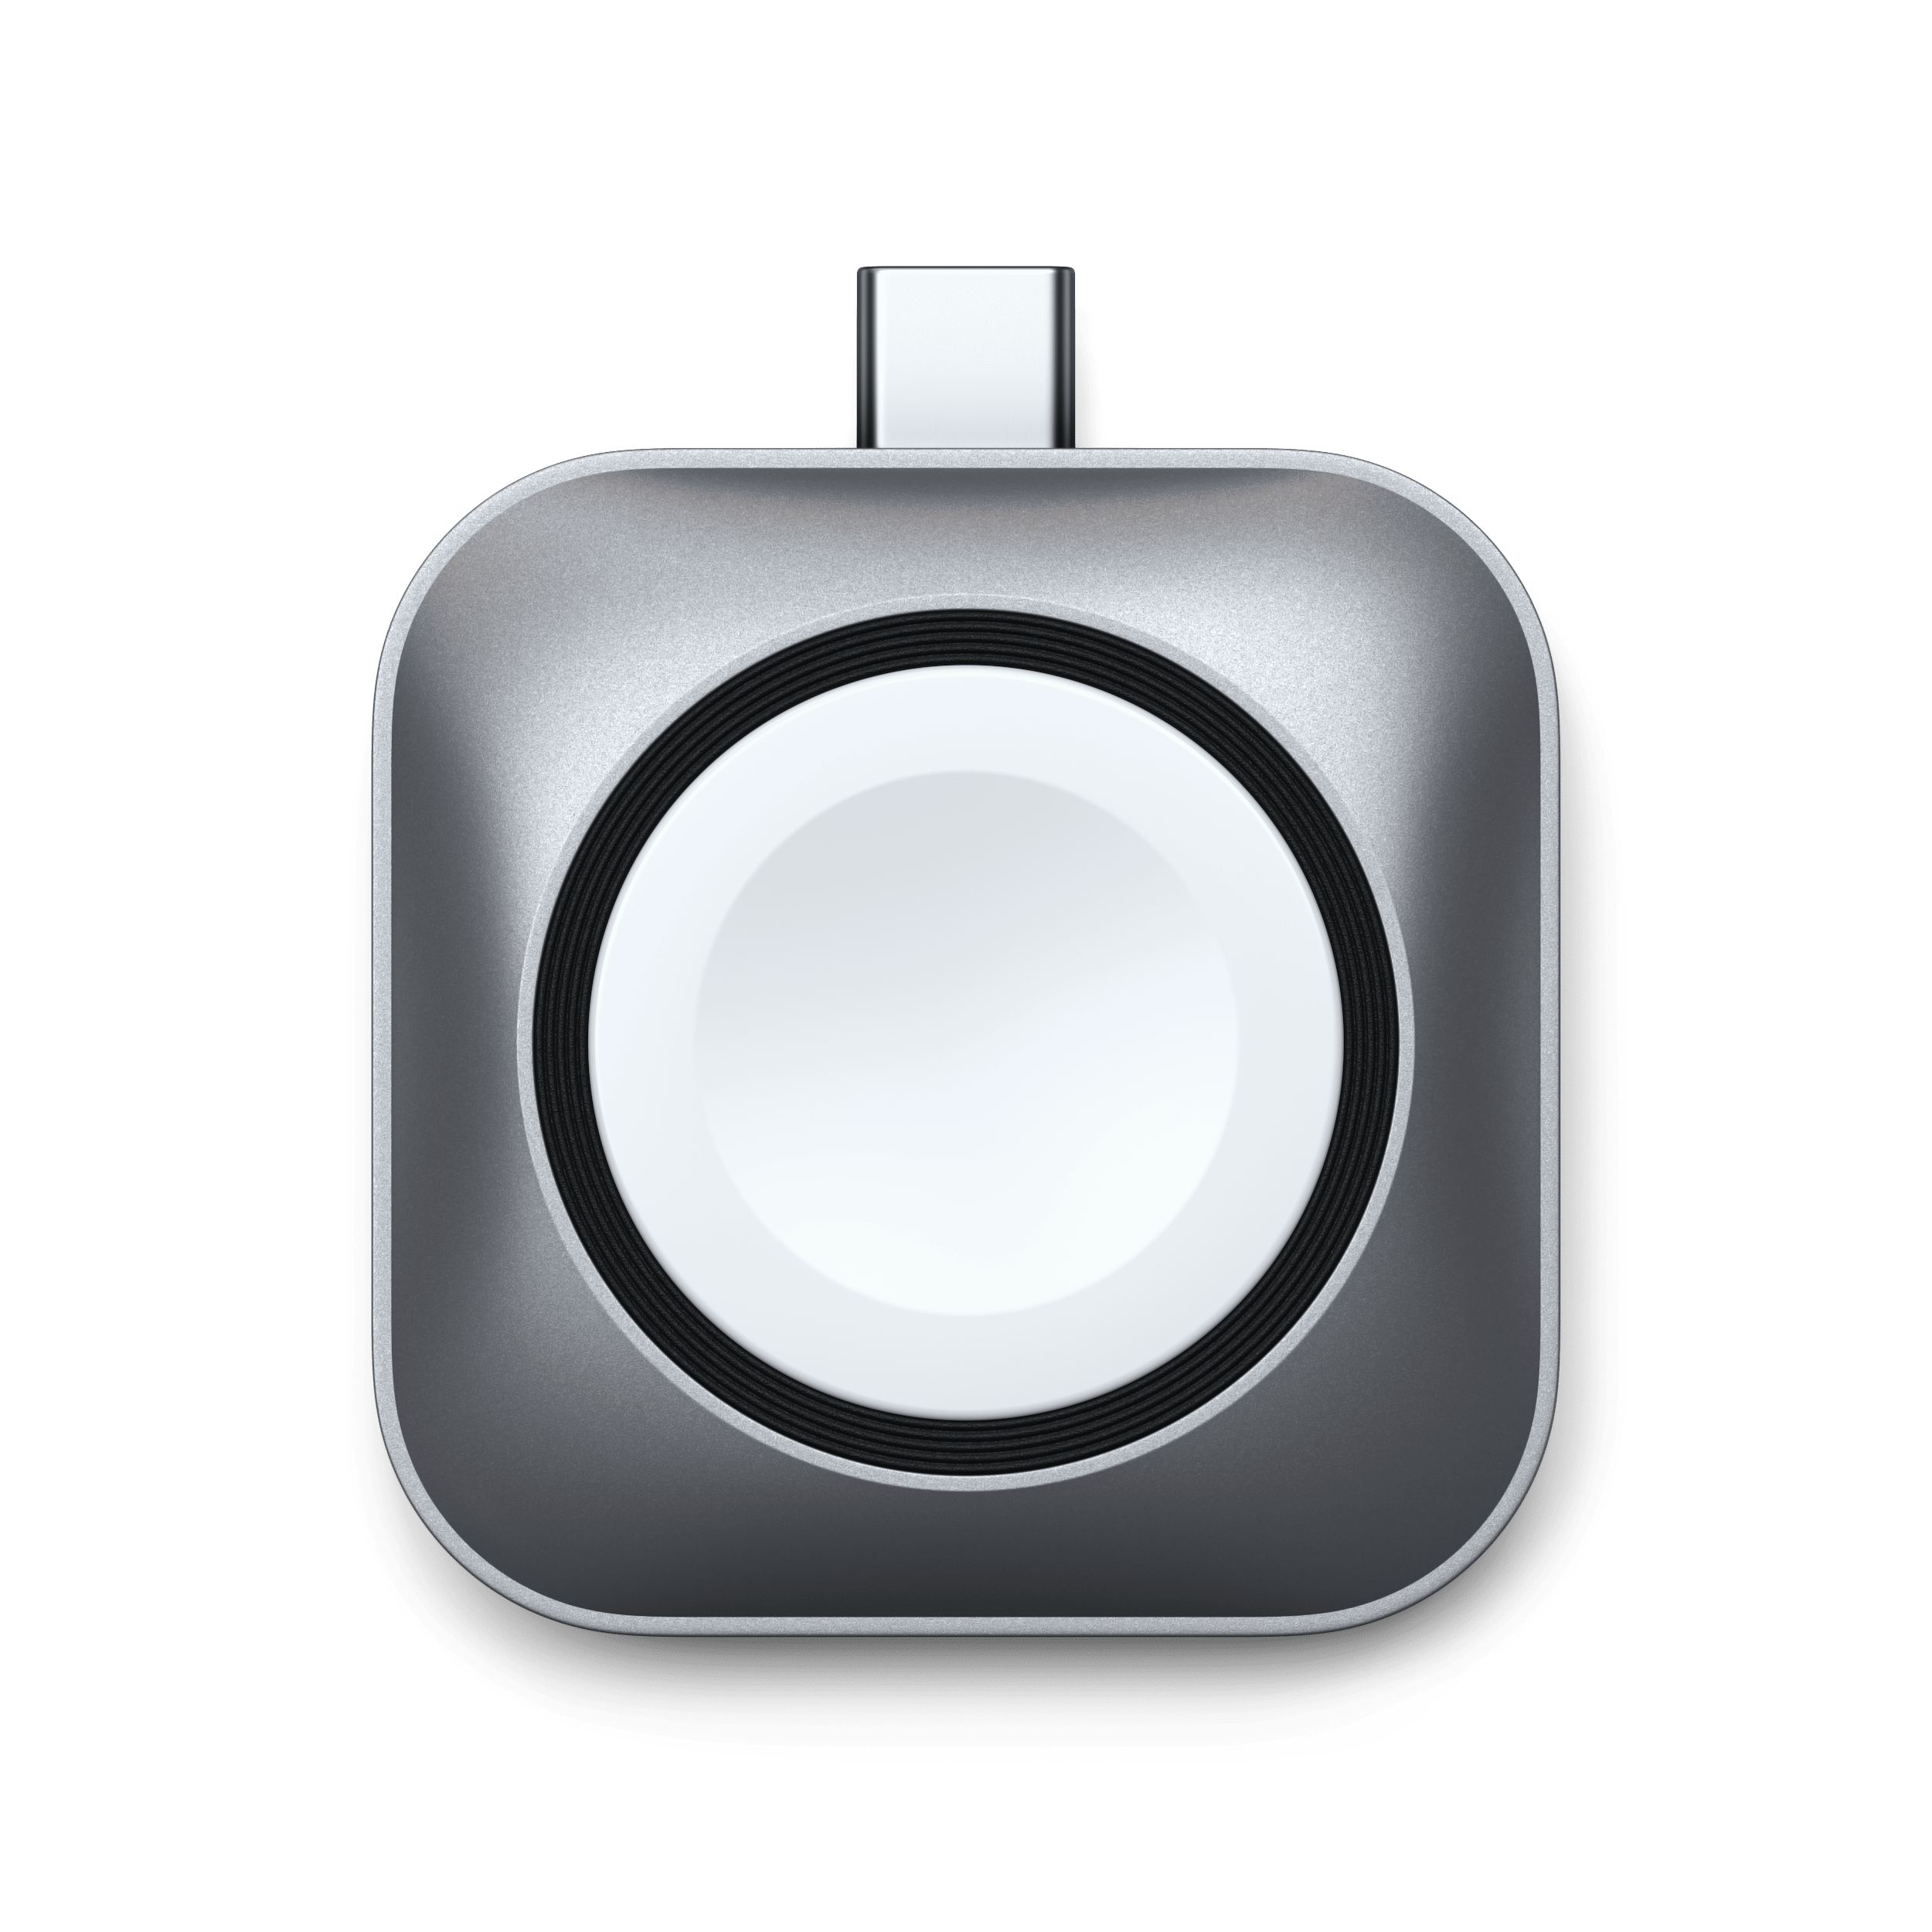 Satechi Chargeur magnétique sans fil USB-C pour iPhone 13 & 12 - Chargeur -  SATECHI